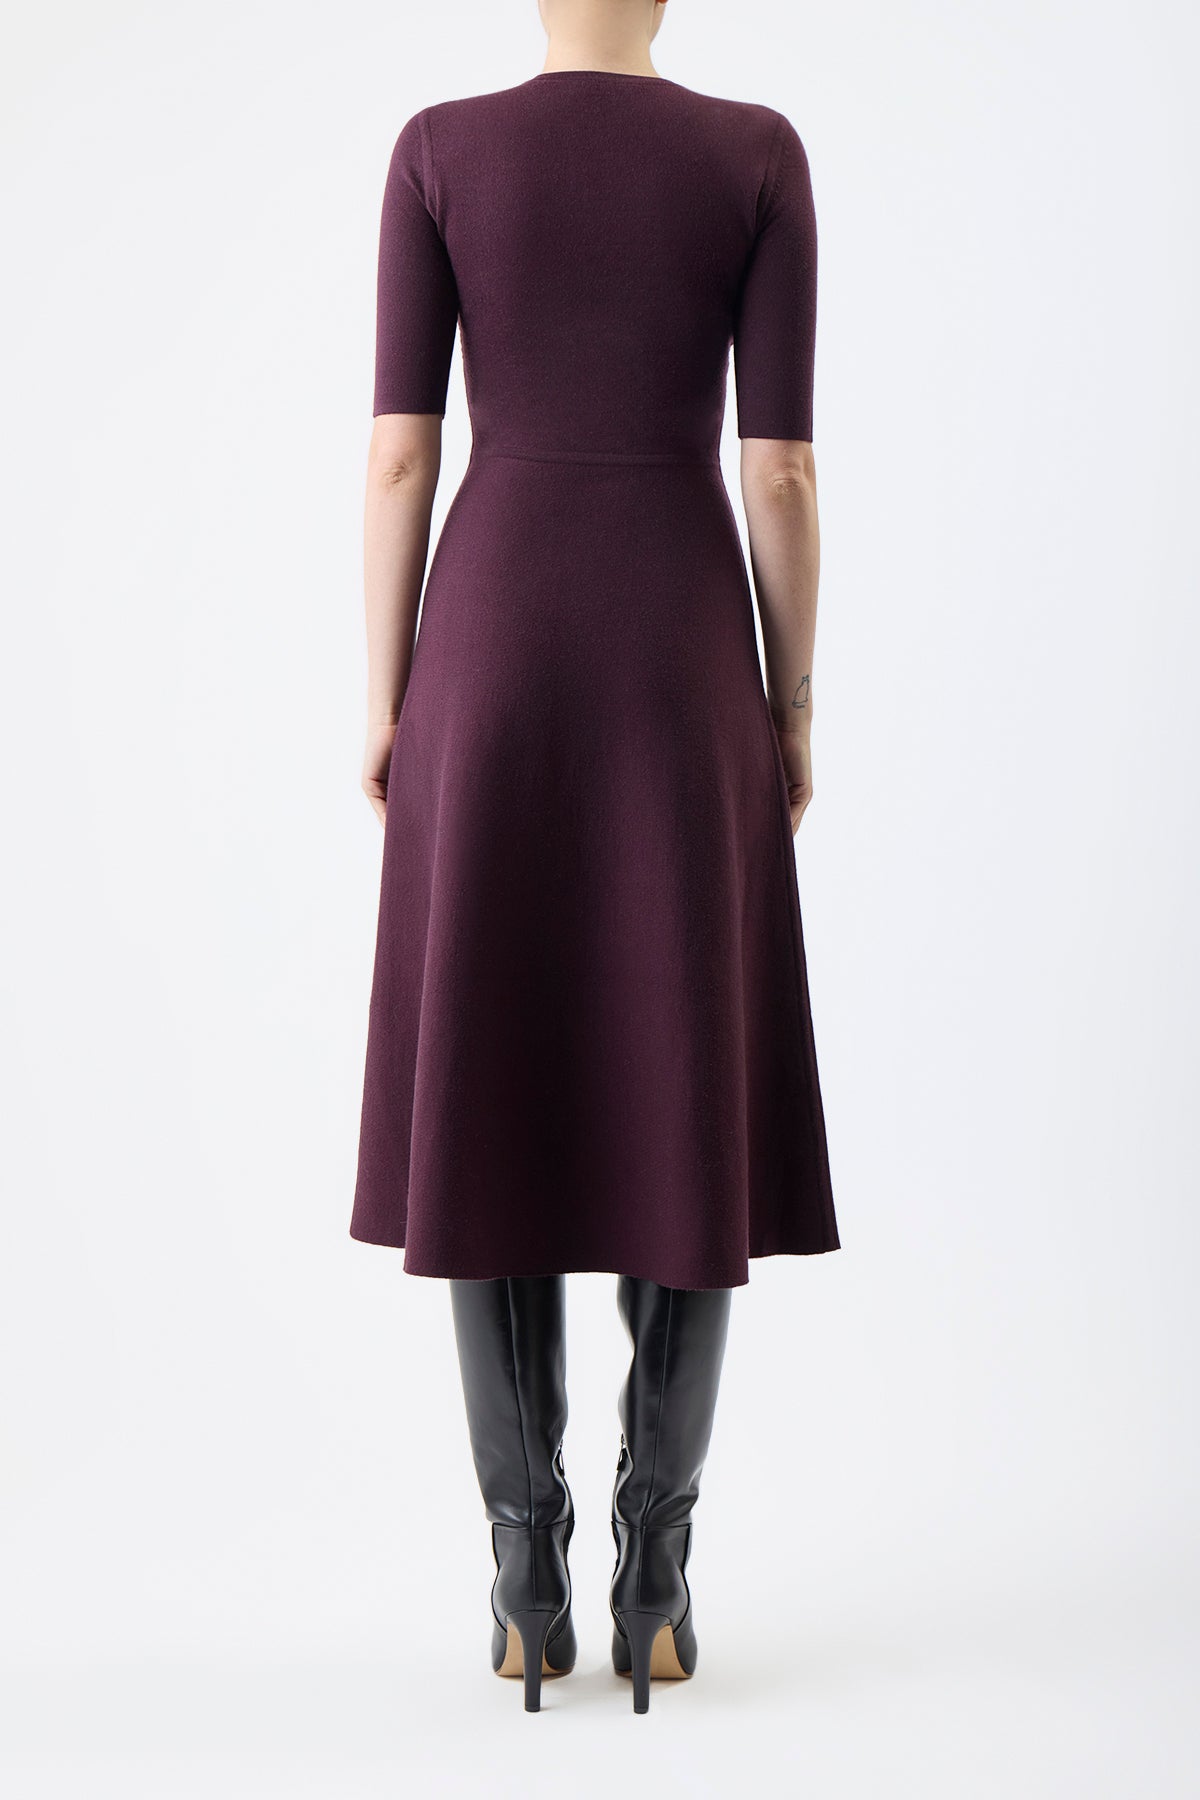 Seymore Knit Dress in Deep Bordeaux Cashmere Silk Wool